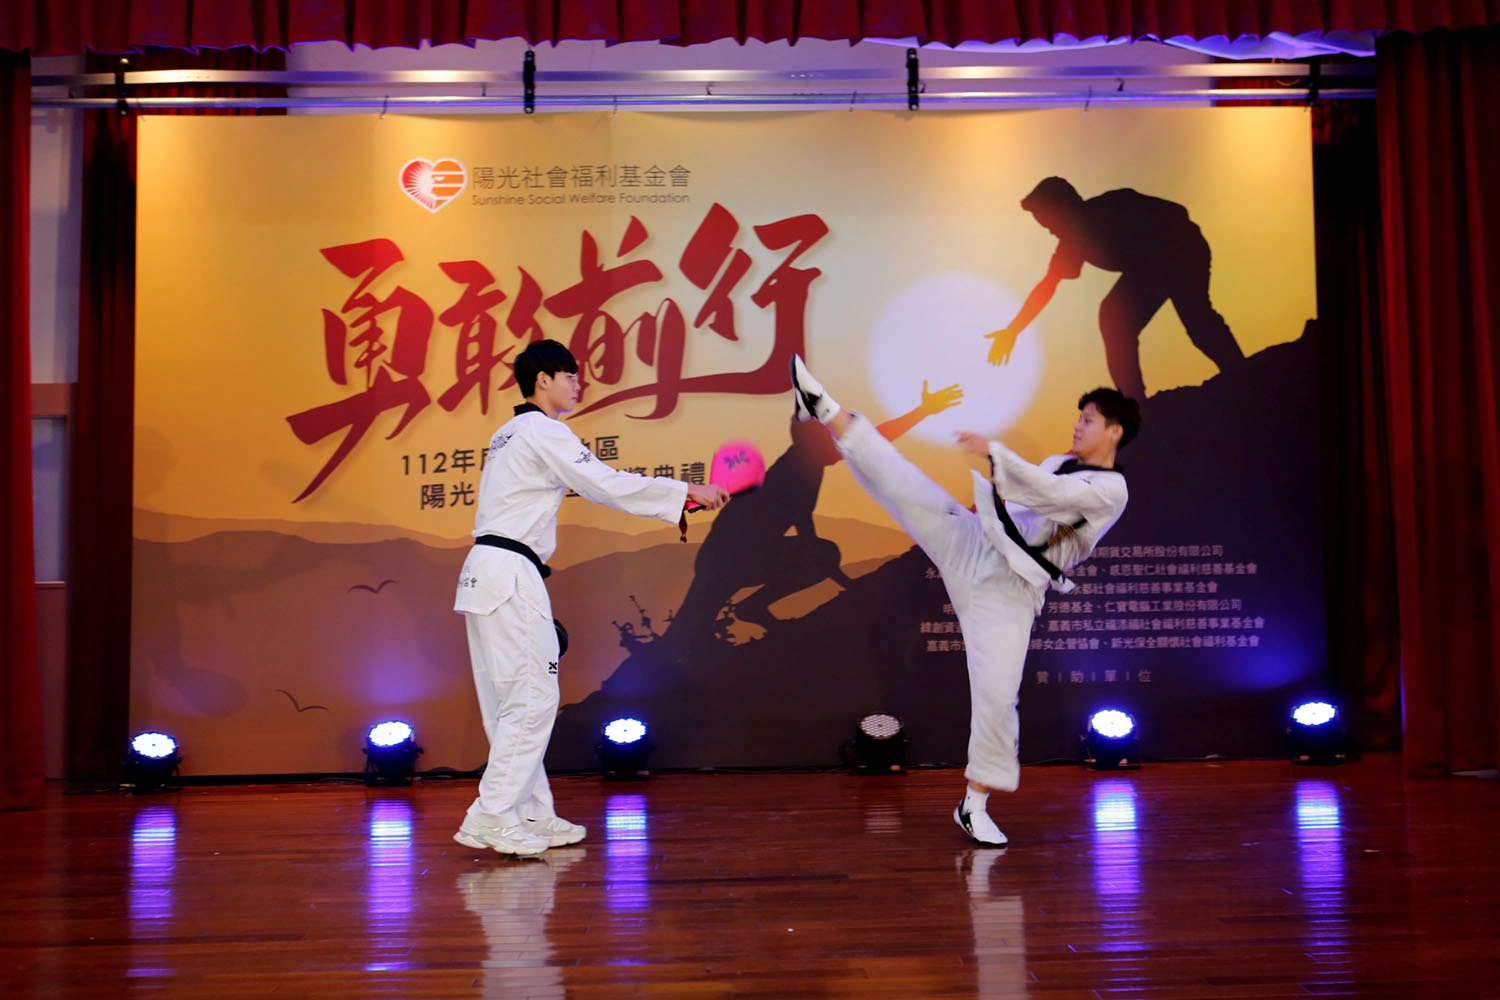 黃文忠(右)在陽光獎學金典禮上與同學合作精采表演。